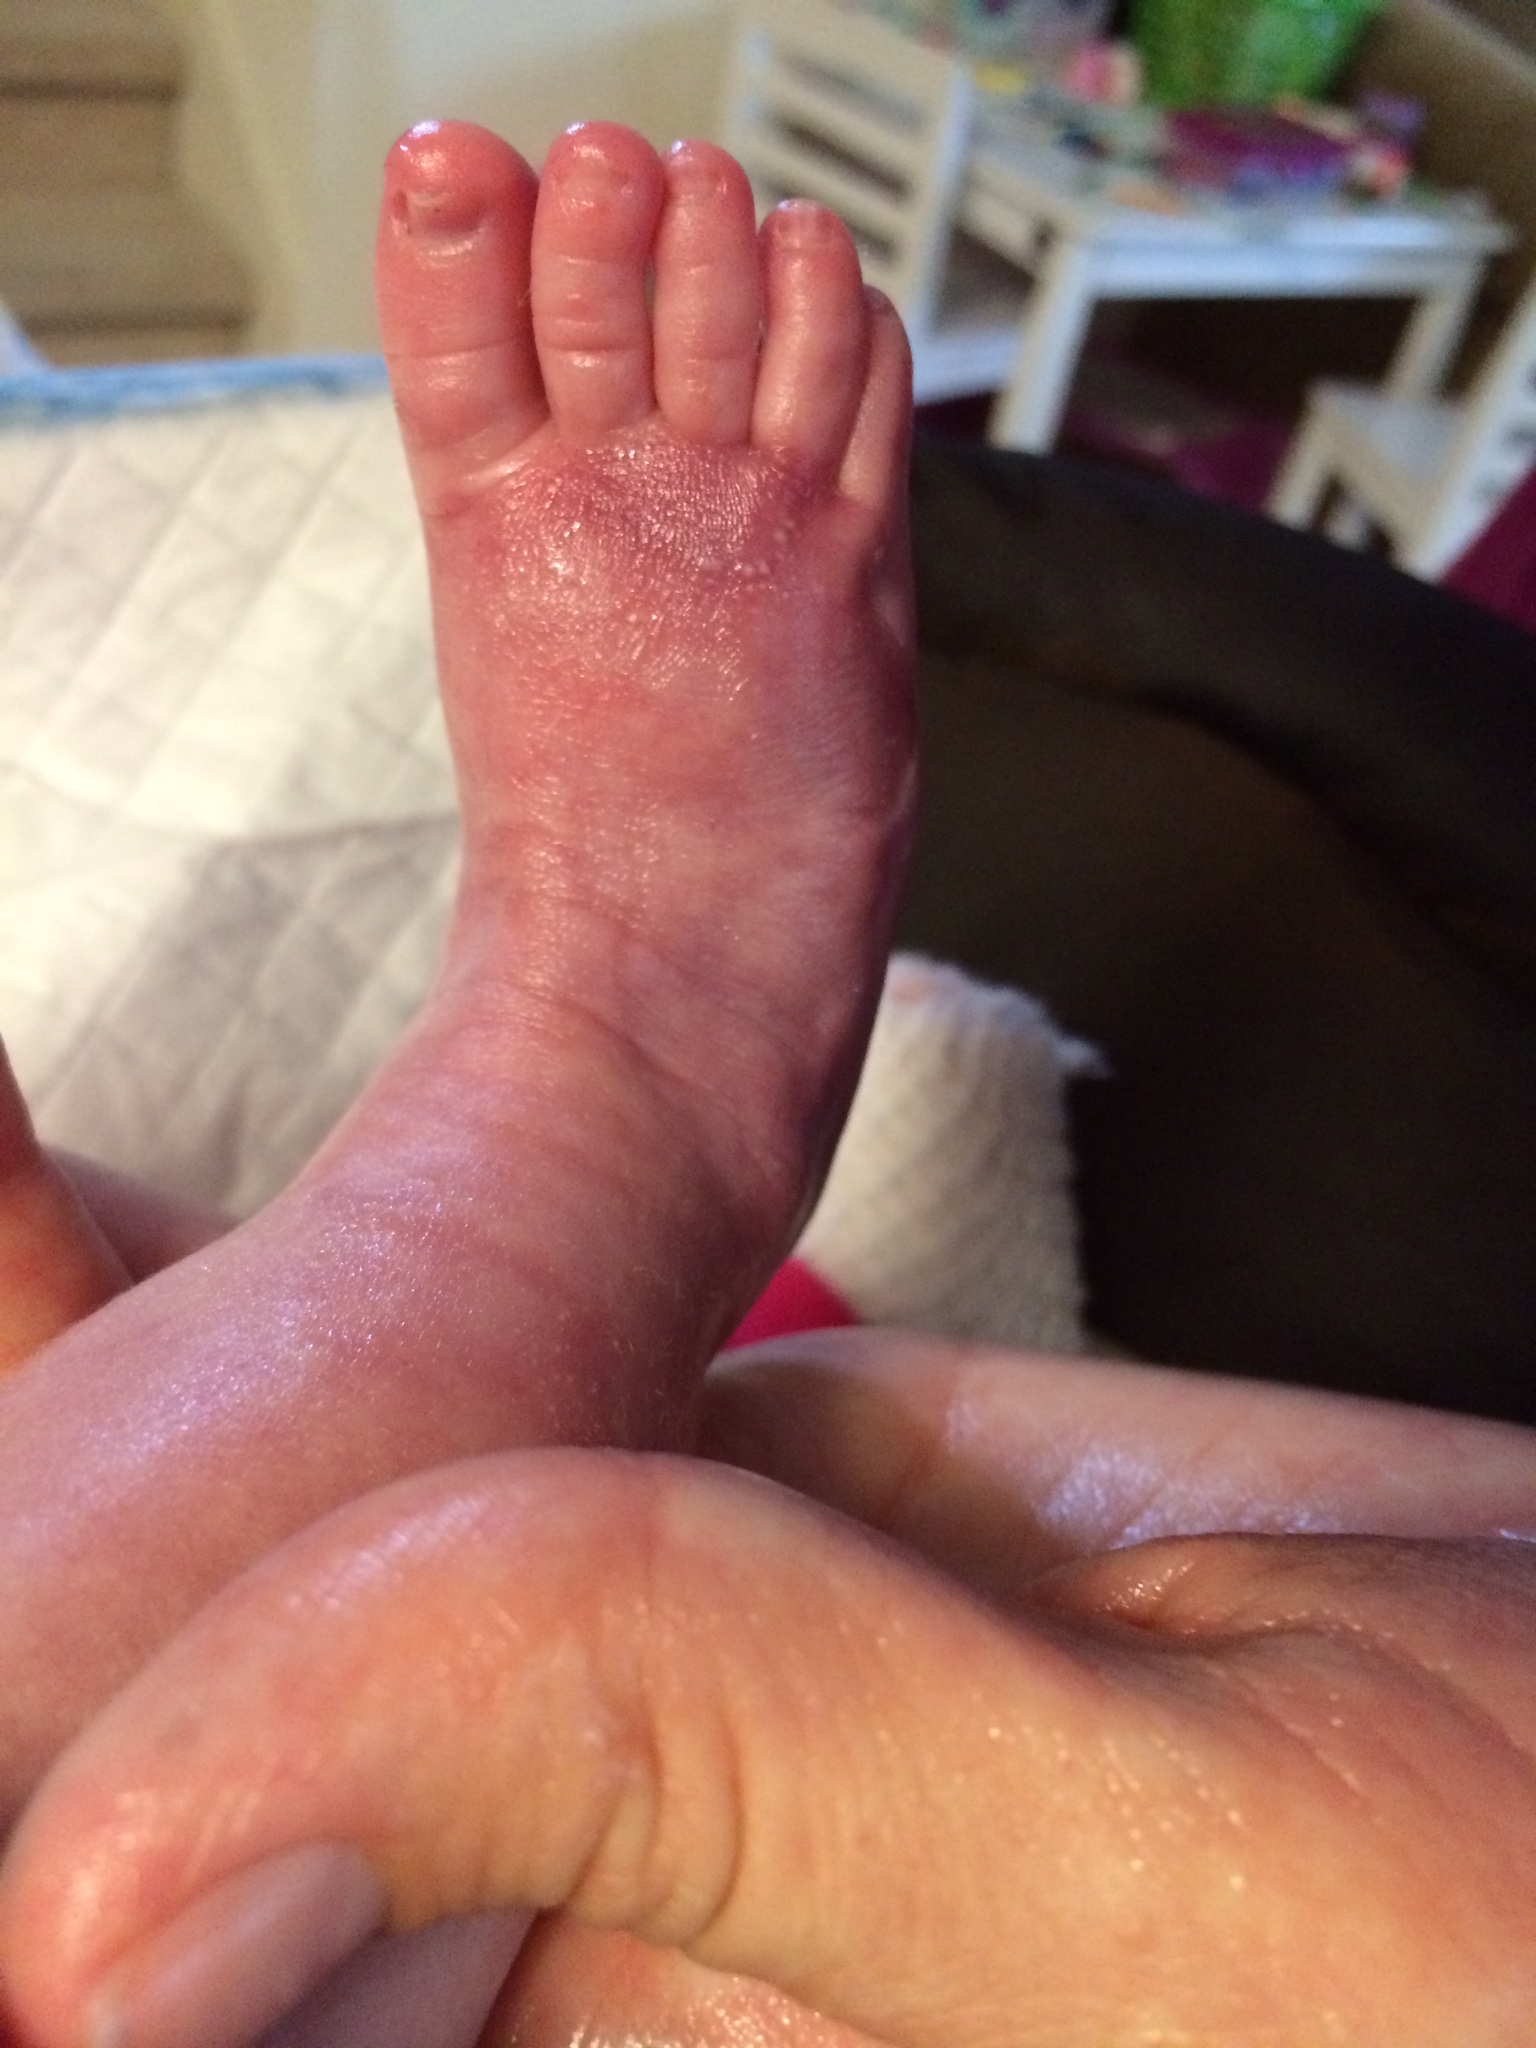 Kiira's healing right foot at 6 weeks